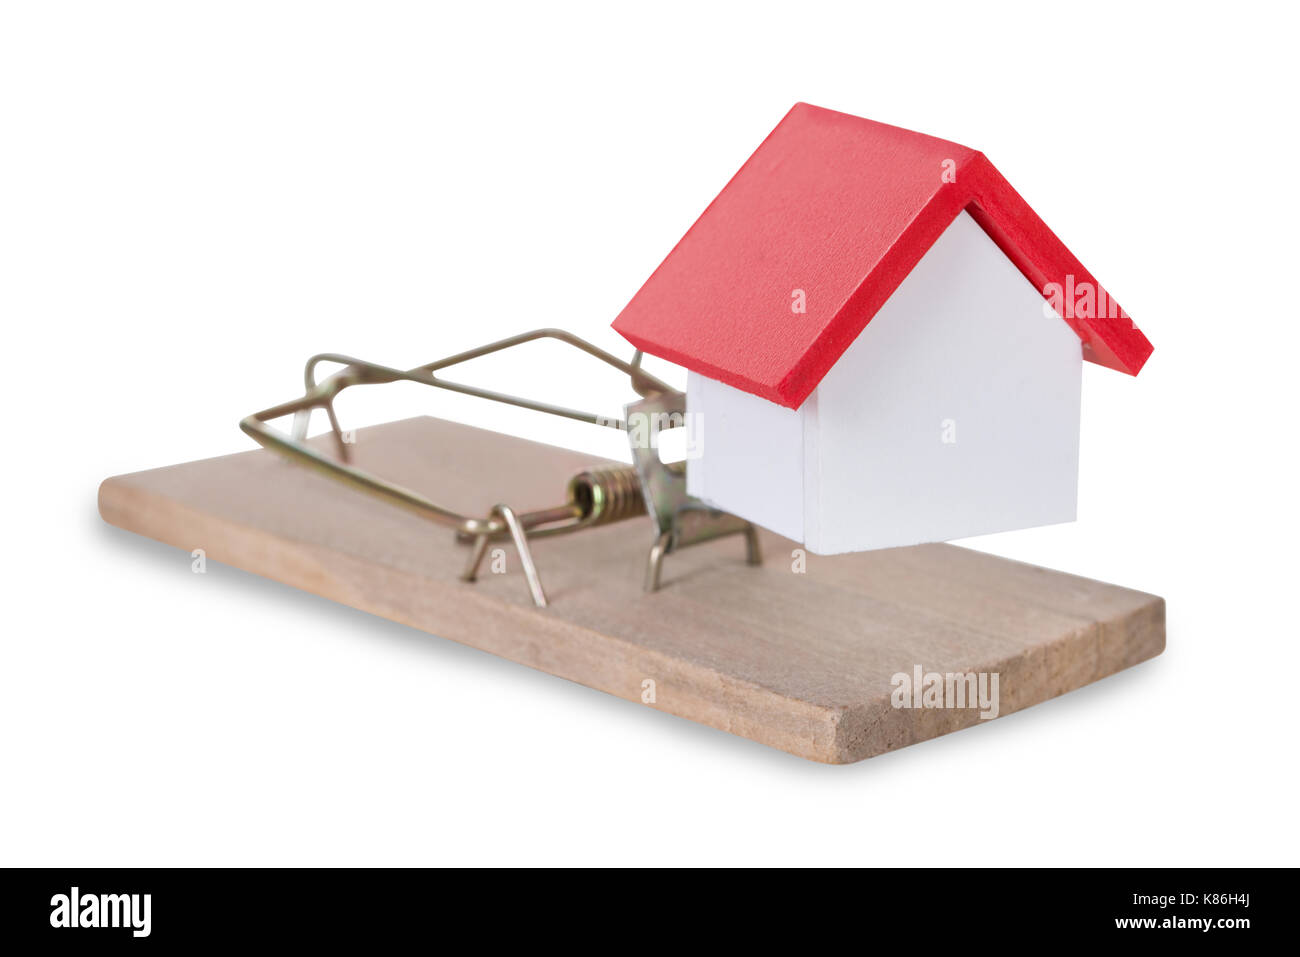 Maison de gros plan sur miniature mousetrap against white background Banque D'Images